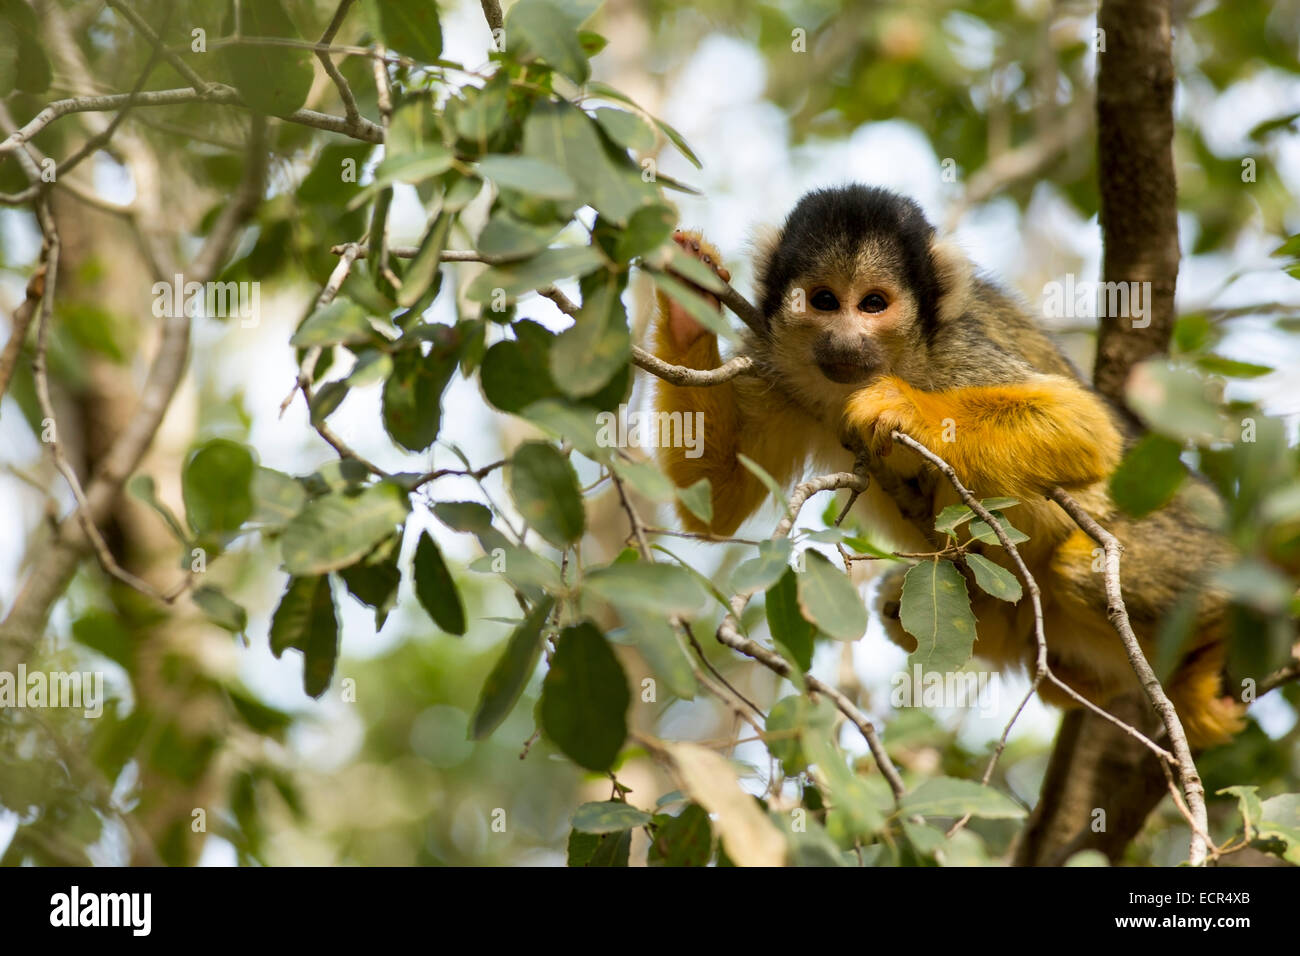 Scimmia di scoiattolo (Saimiri sciureus) in una struttura ad albero. Questa scimmia è nativo di tropical America del Sud e Centrale. Esso è esclusivamente arb Foto Stock